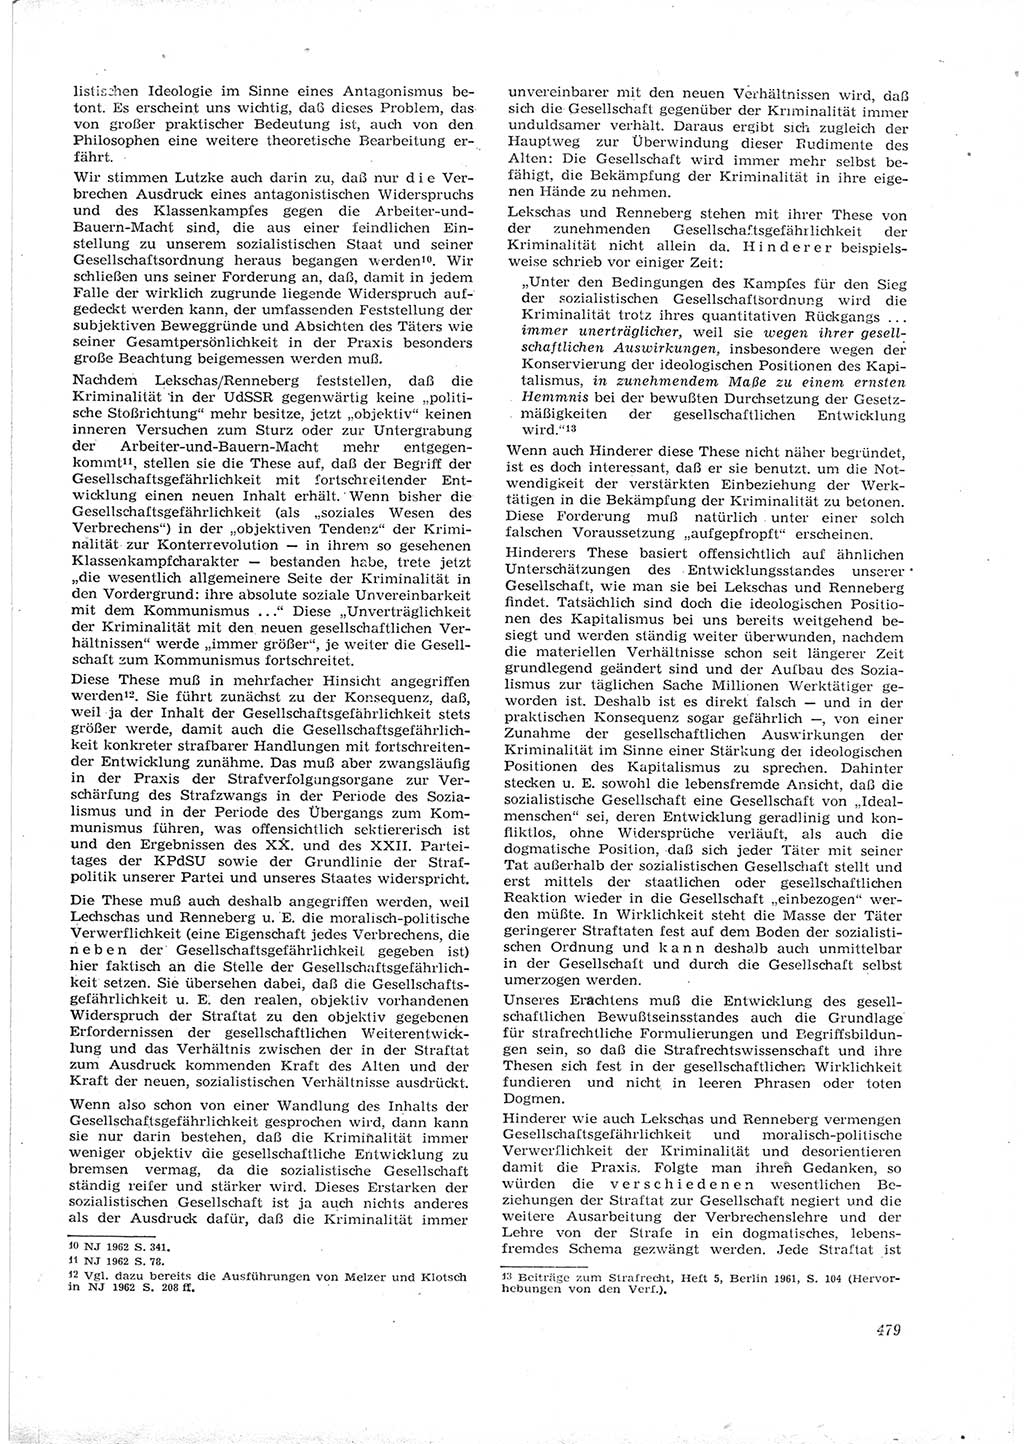 Neue Justiz (NJ), Zeitschrift für Recht und Rechtswissenschaft [Deutsche Demokratische Republik (DDR)], 16. Jahrgang 1962, Seite 479 (NJ DDR 1962, S. 479)